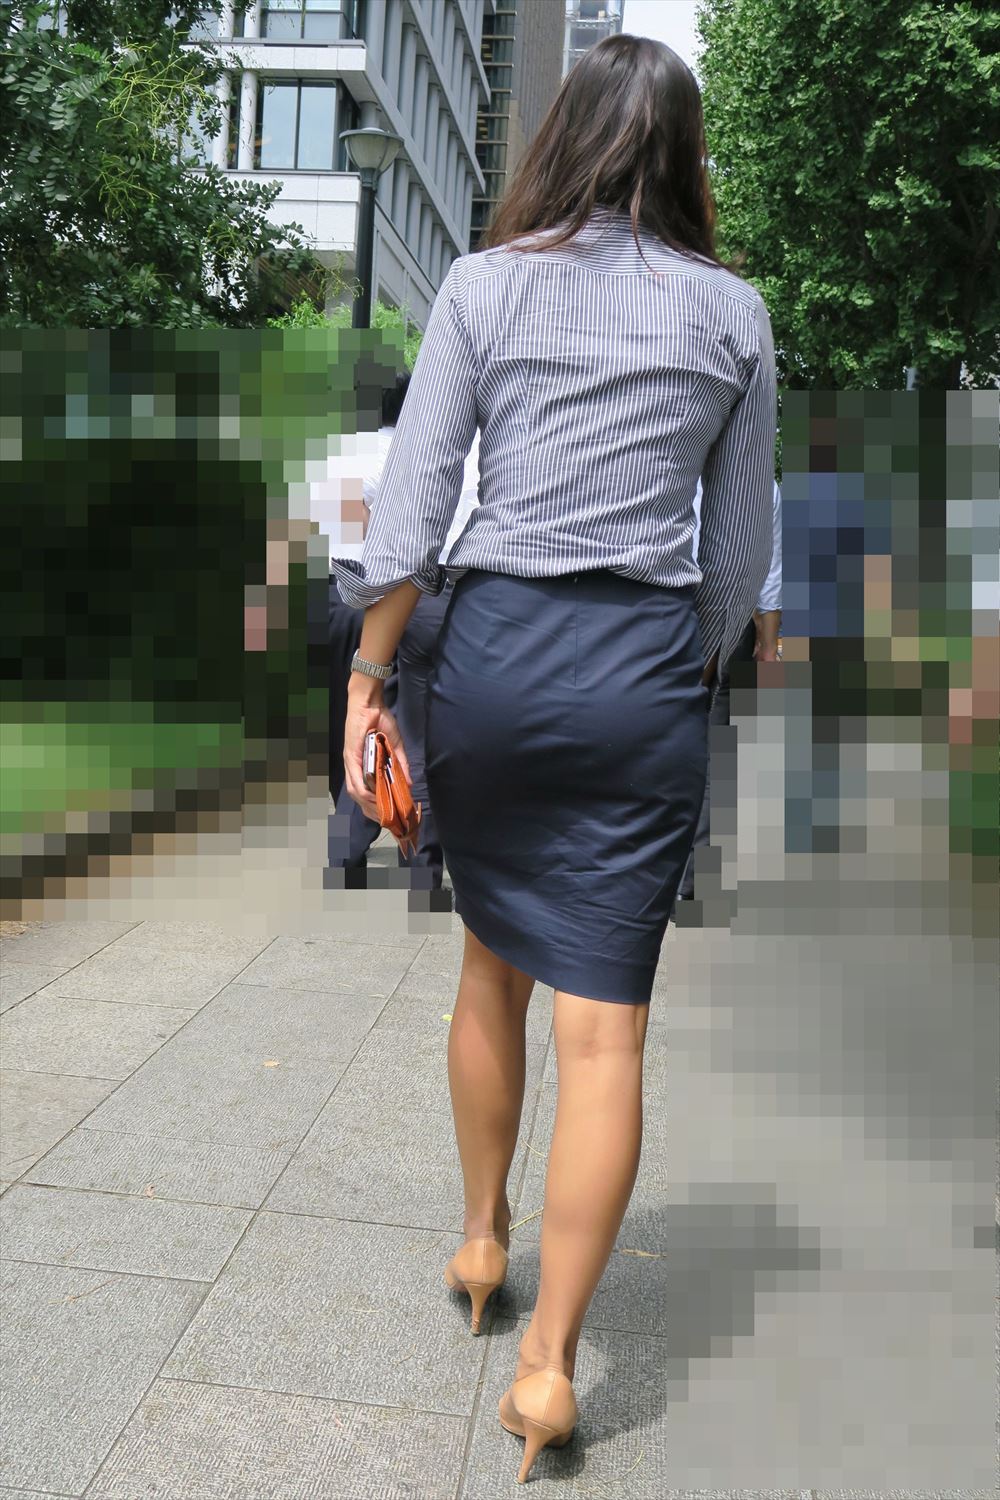 OLさんや就活女子のタイトスカートお尻を街撮りした素人エロ画像-180